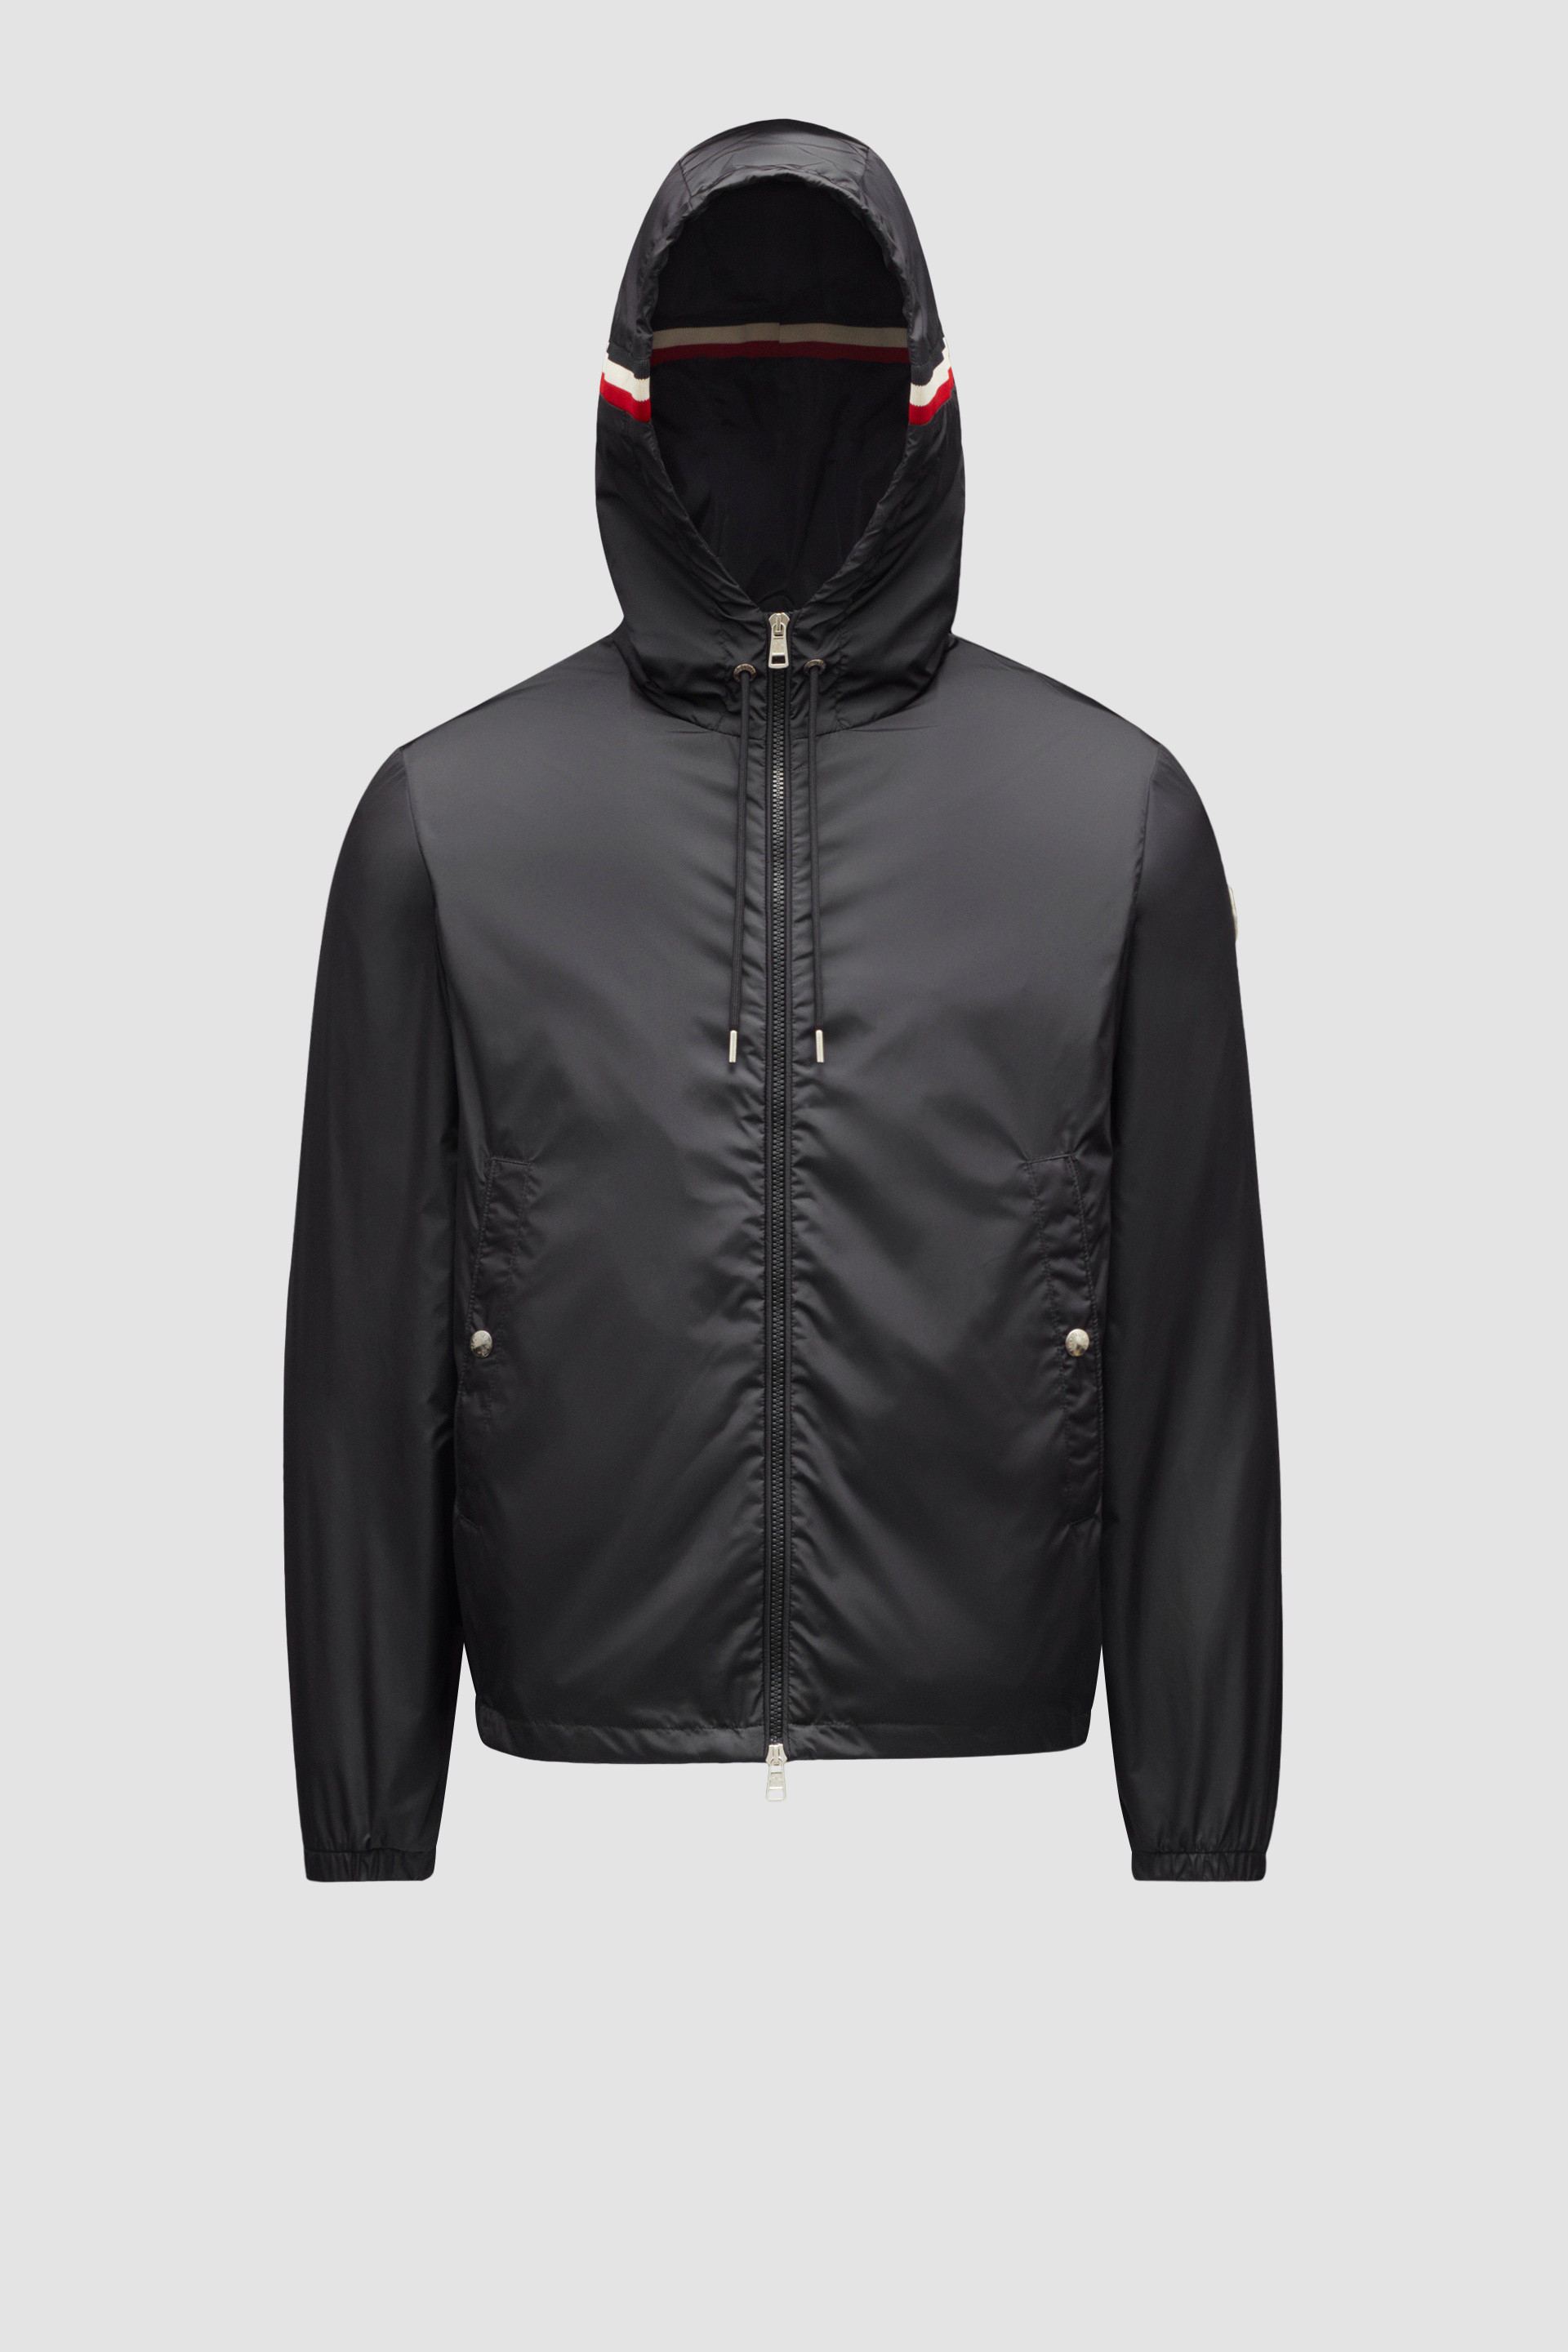 ブラック Grimpeursジャケット : ウインドブレーカーとレインコート